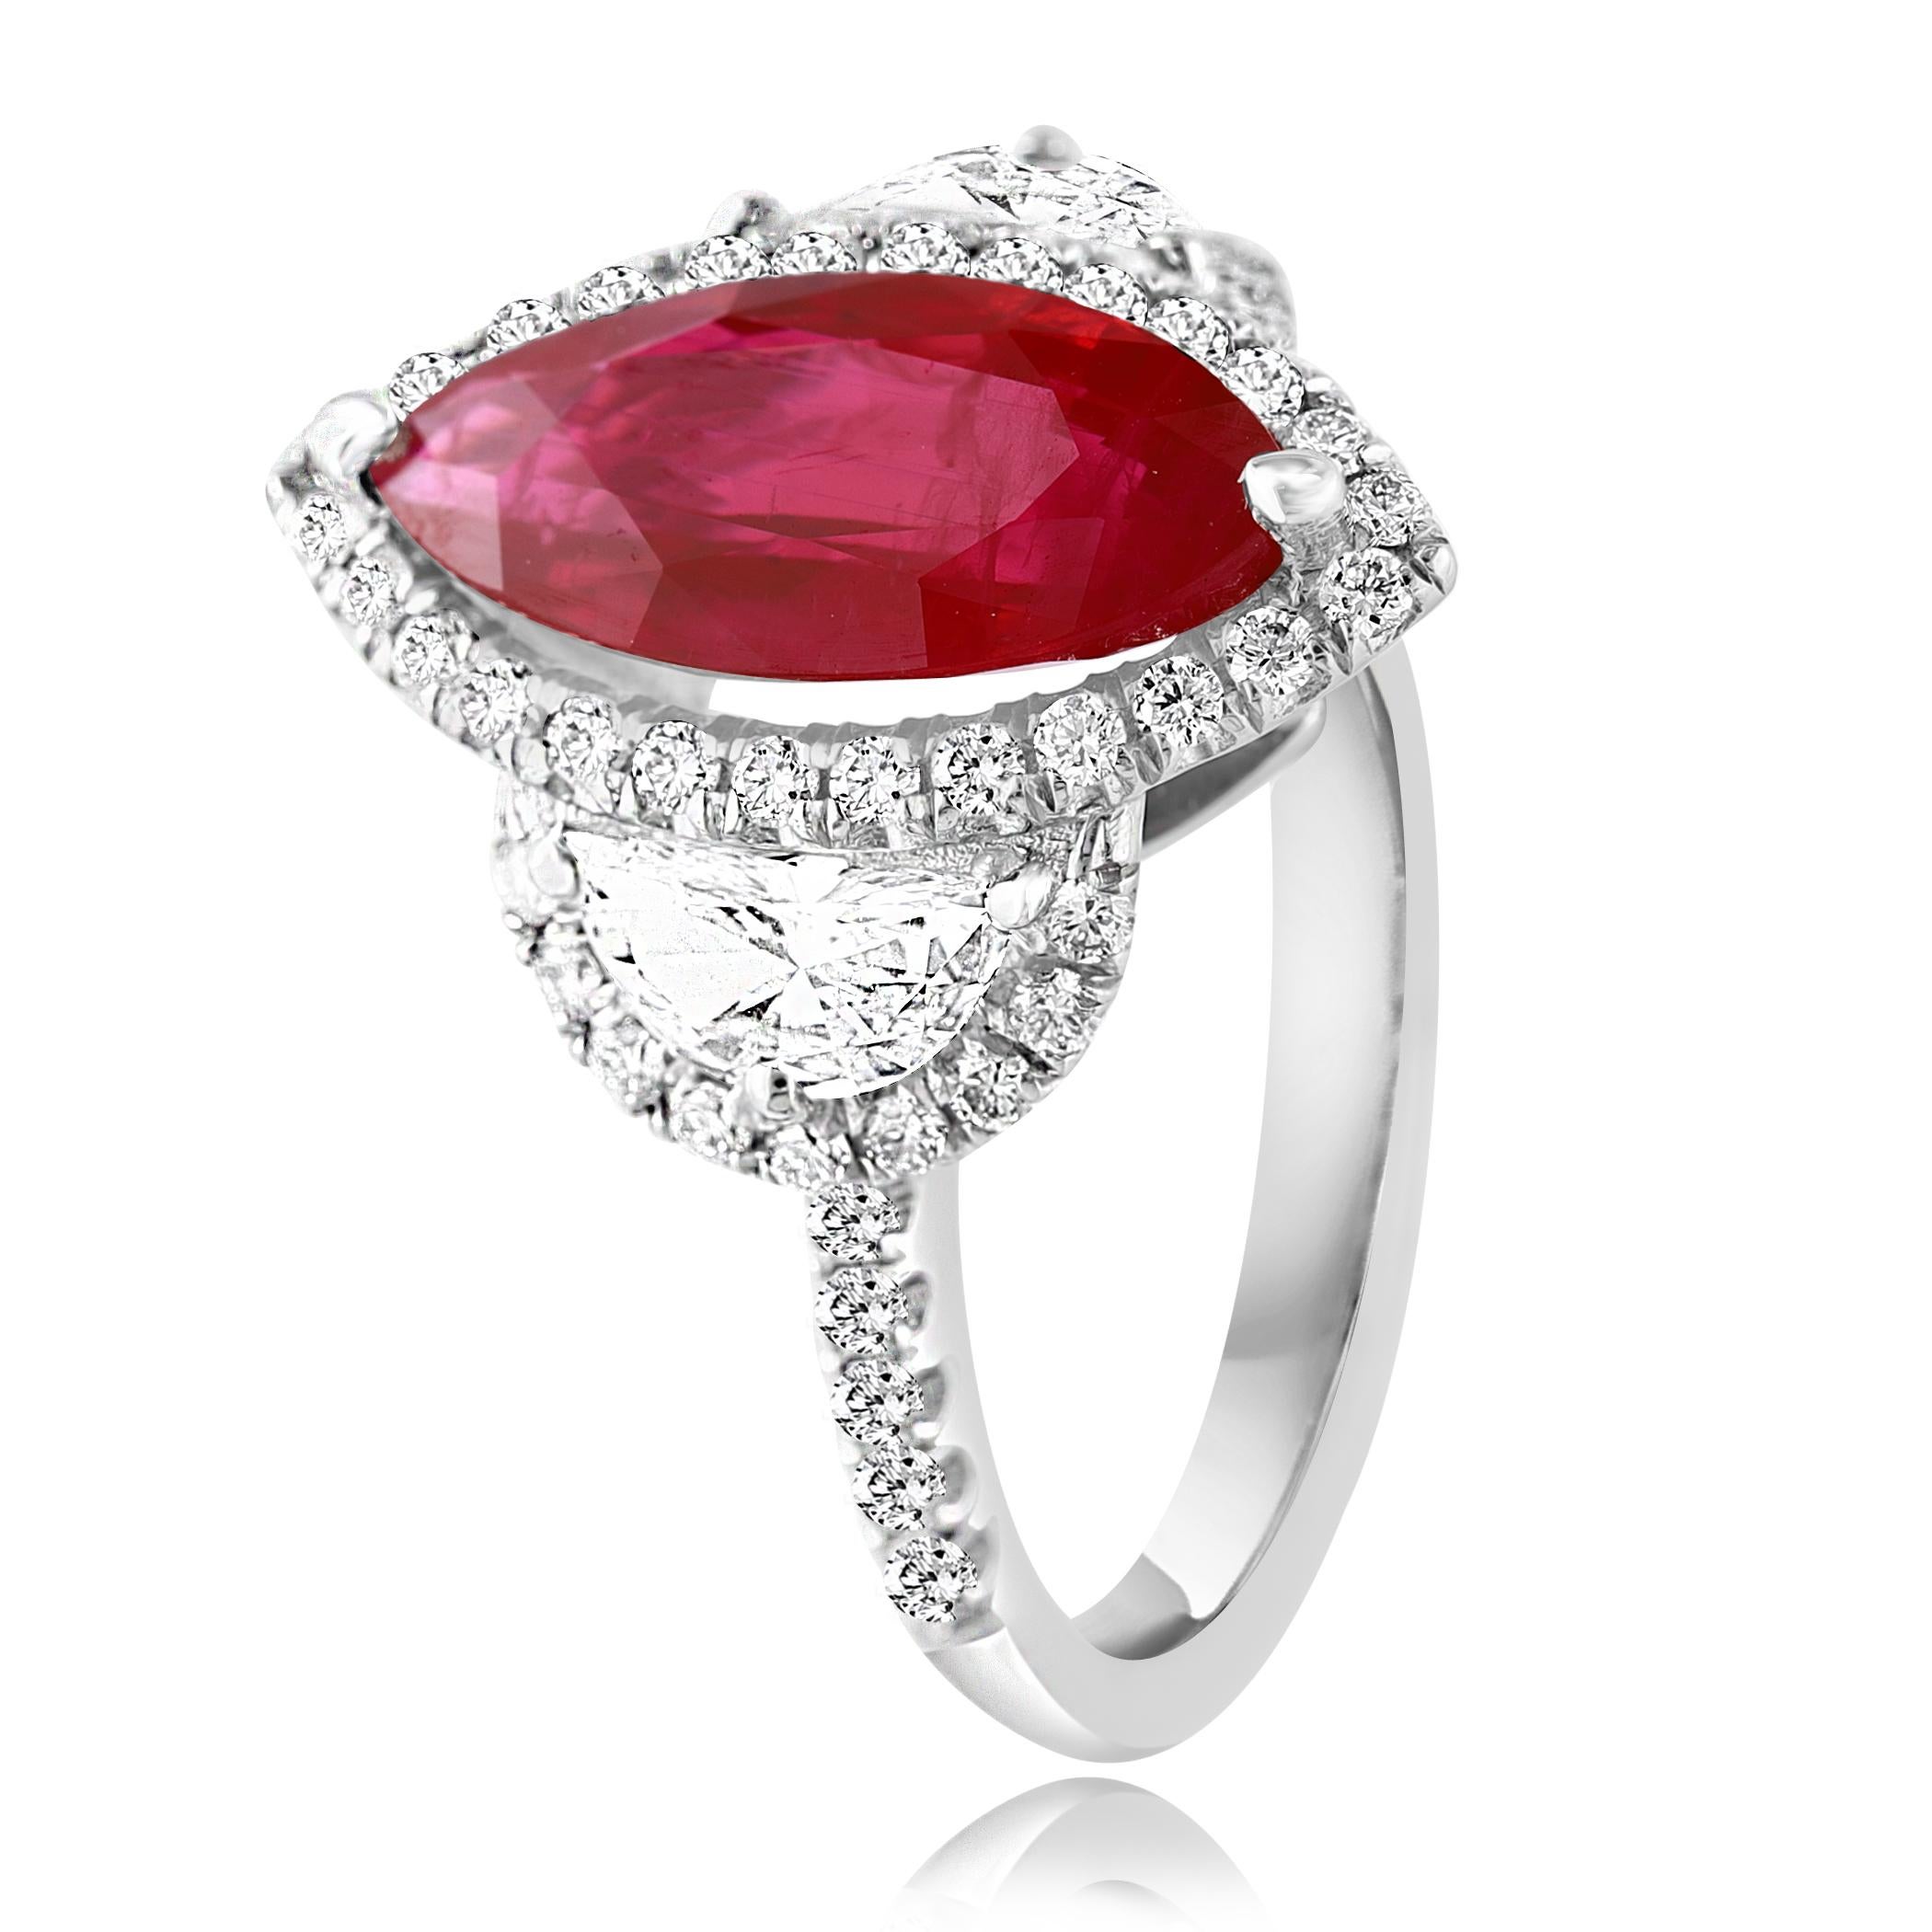 Cette magnifique bague est ornée d'un rubis certifié à taille marquise d'un rouge birman intense pesant 3,01 carats, entouré d'une rangée de diamants. La pierre centrale est flanquée de deux diamants demi-lune de taille brillant, pesant 0,57 carats